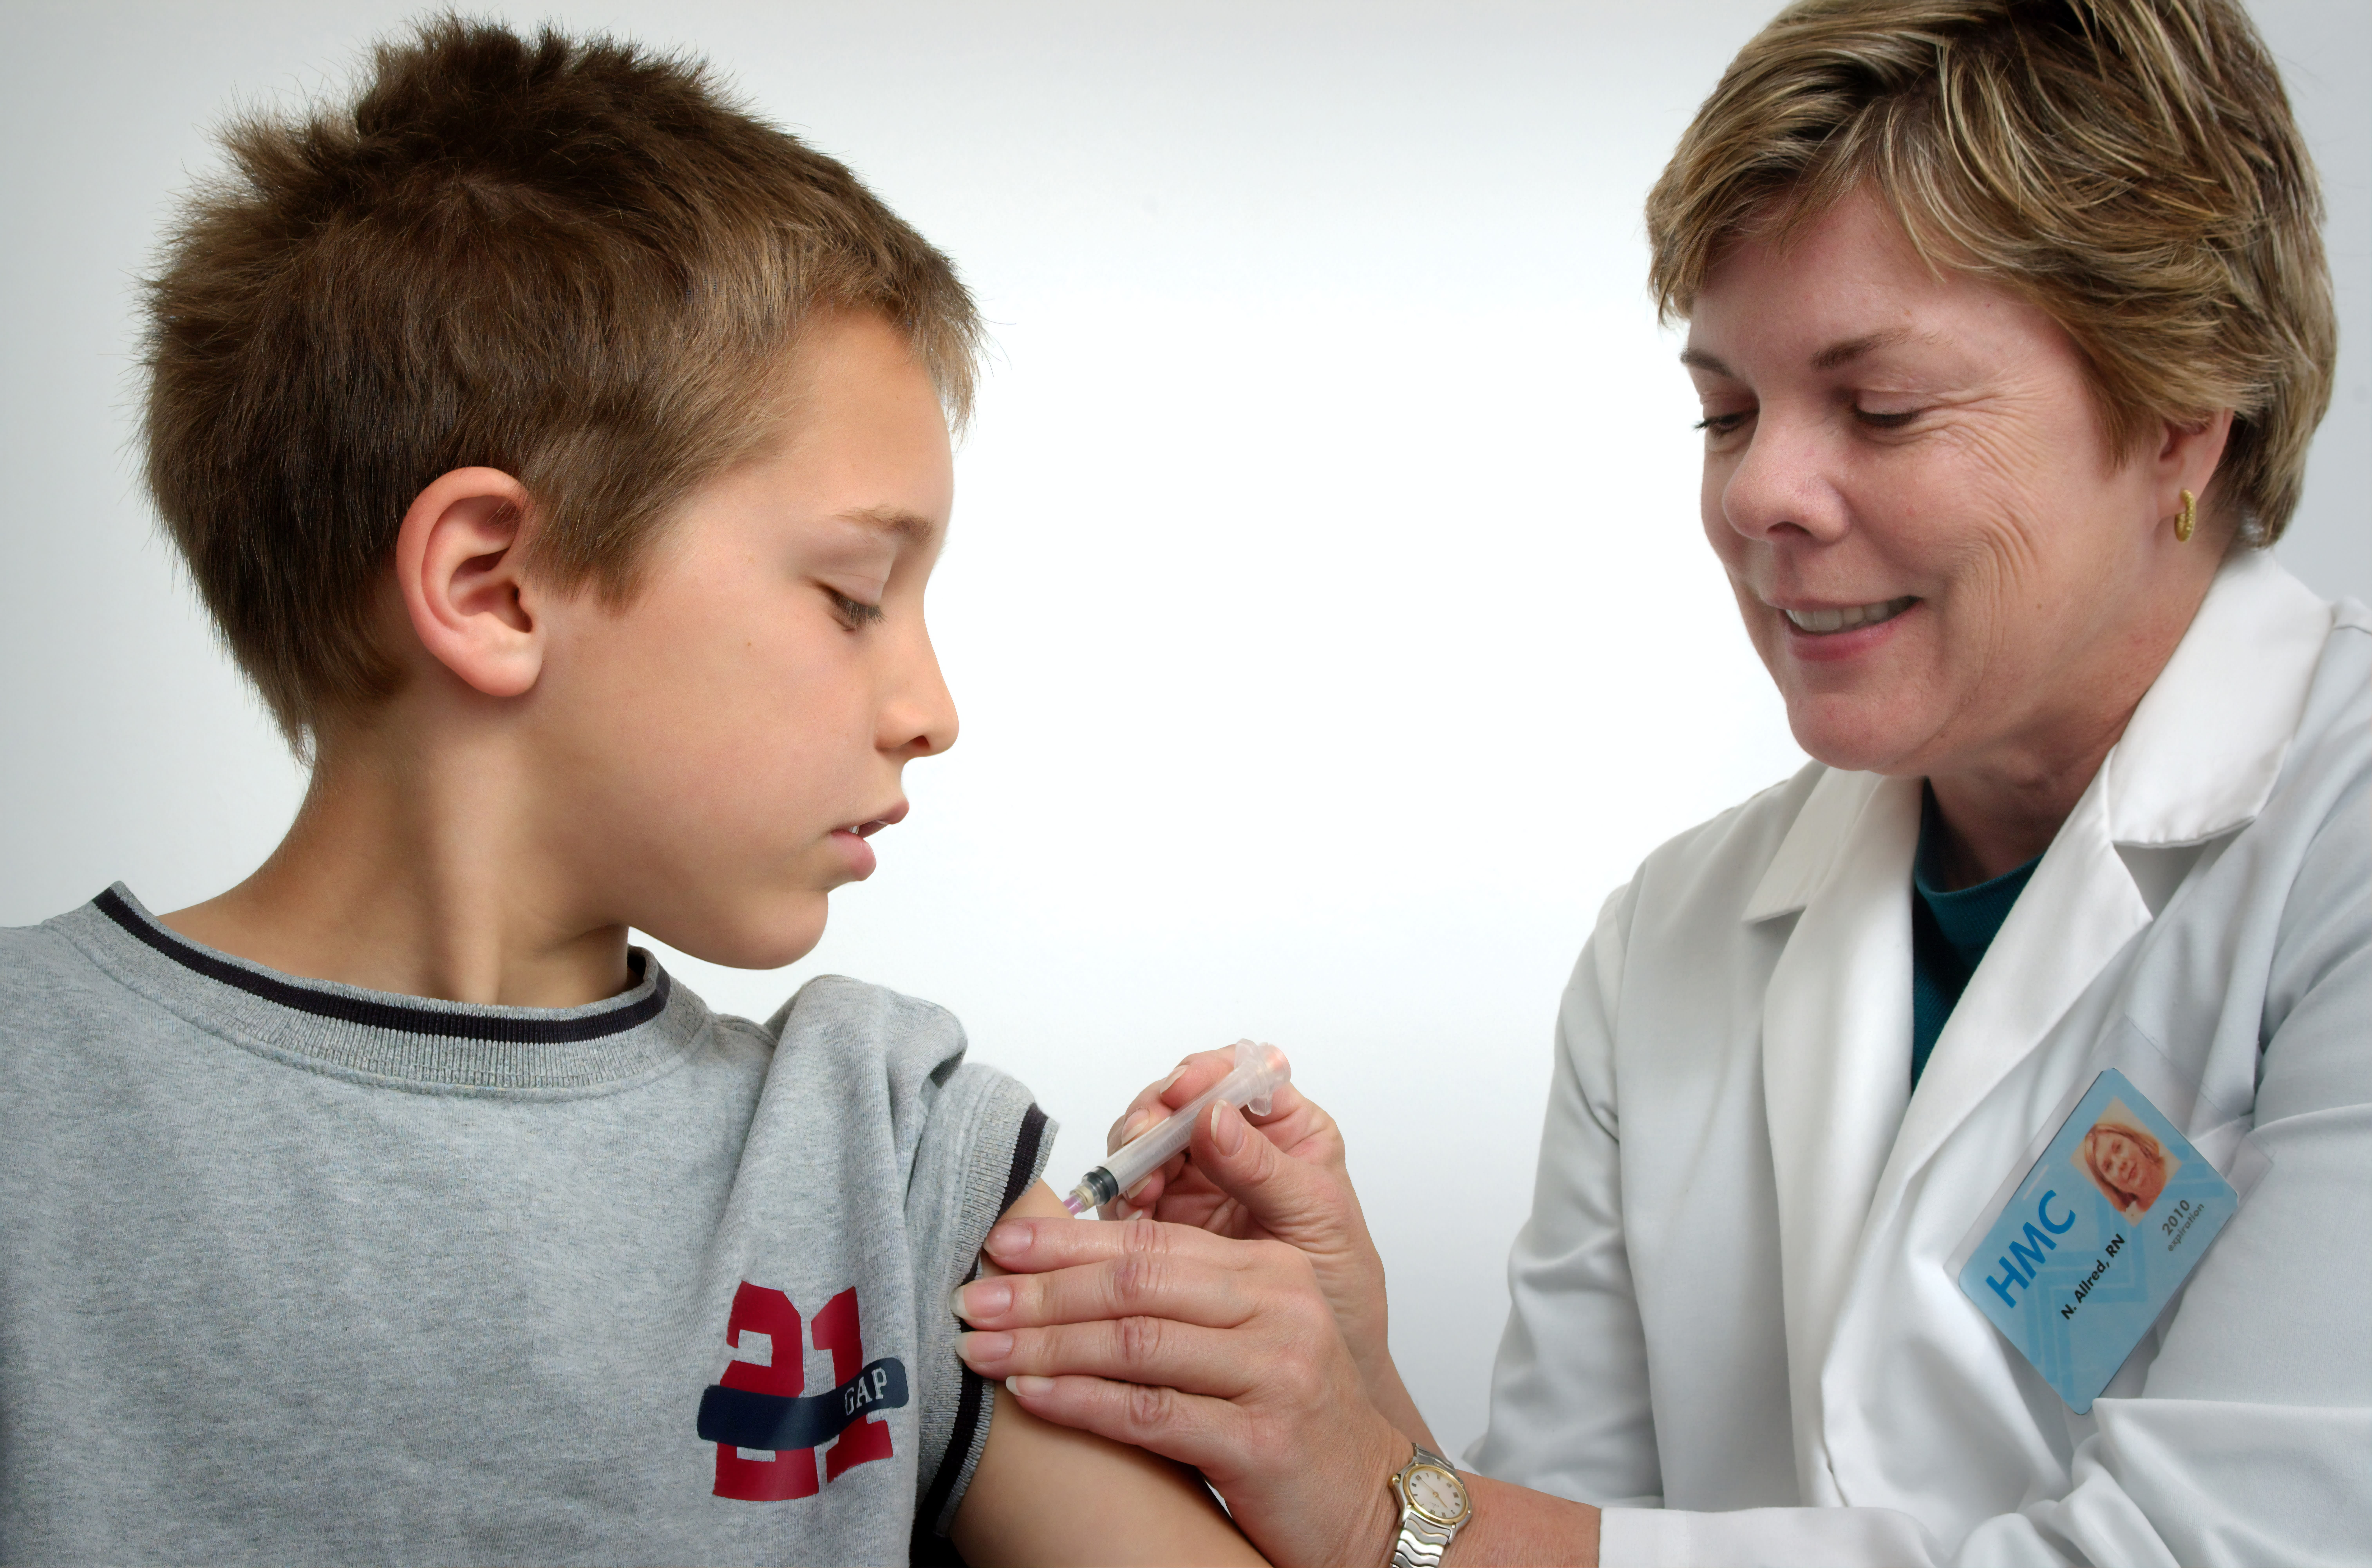 Pielęgniarka przedstawiona na fotografii z 2006 roku była w trakcie podawania szczepionki domięśniowej w lewe ramię młodego chłopca.Pielęgniarka szczypała leżącą na ramieniu skórę w celu unieruchomienia miejsca wstrzyknięcia.